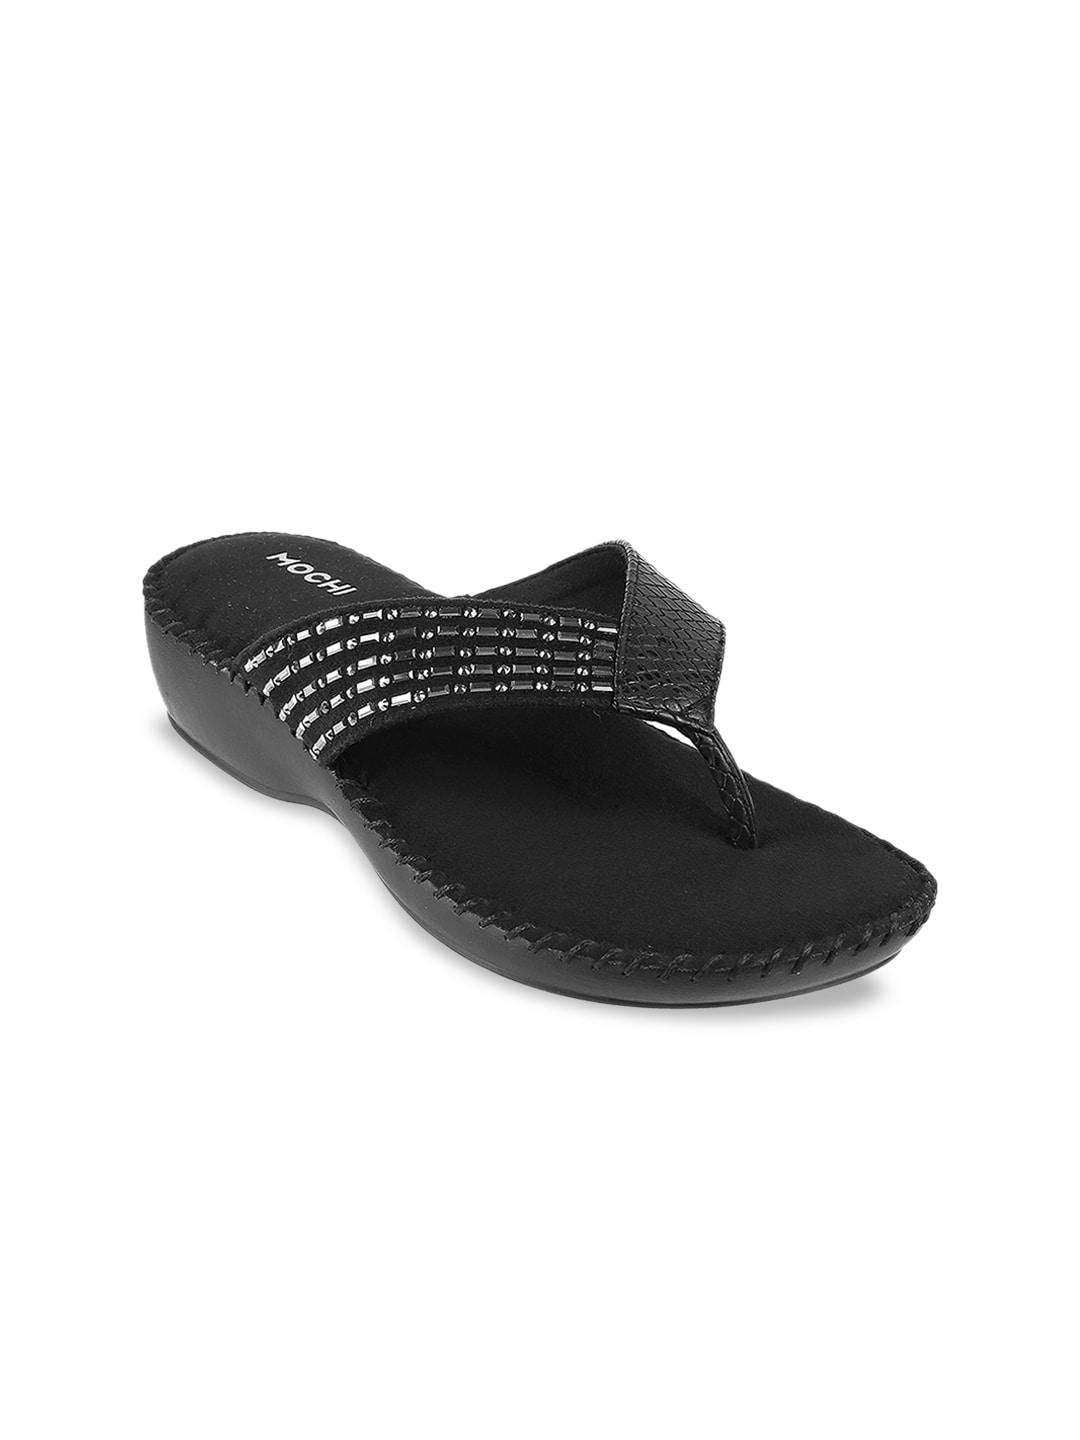 Mochi Black Embellished Comfort Sandals